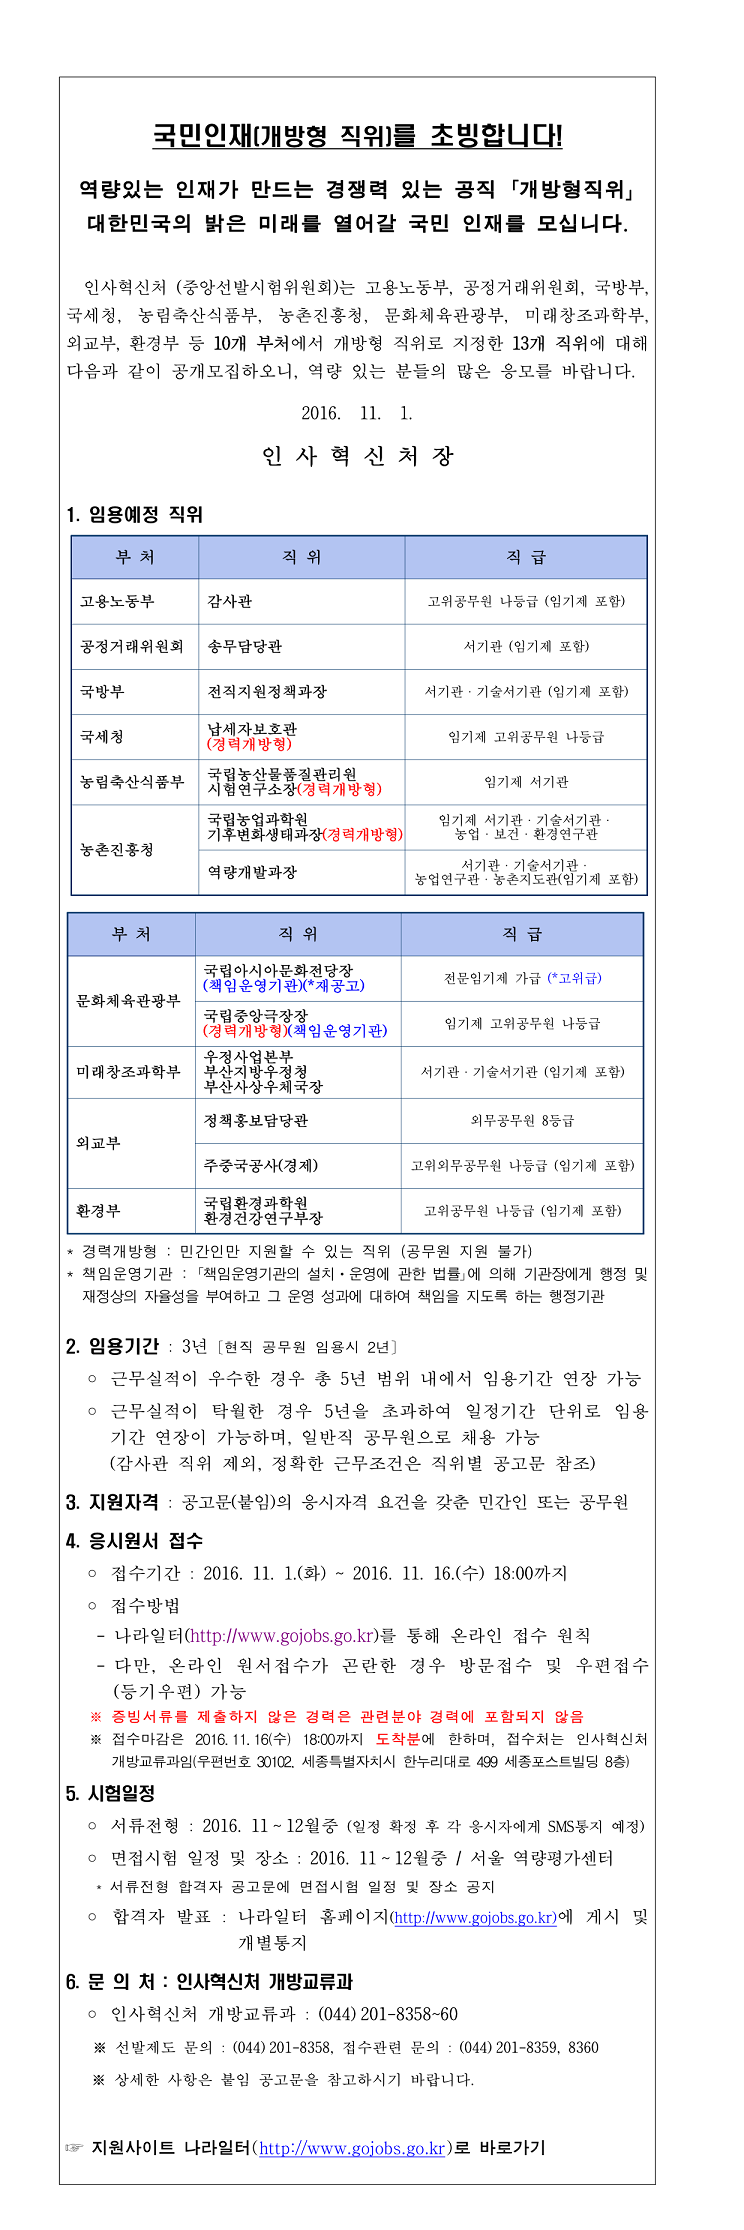 1. 개방형 직위 공개모집 안내(2016년 11월 공고)-1.png